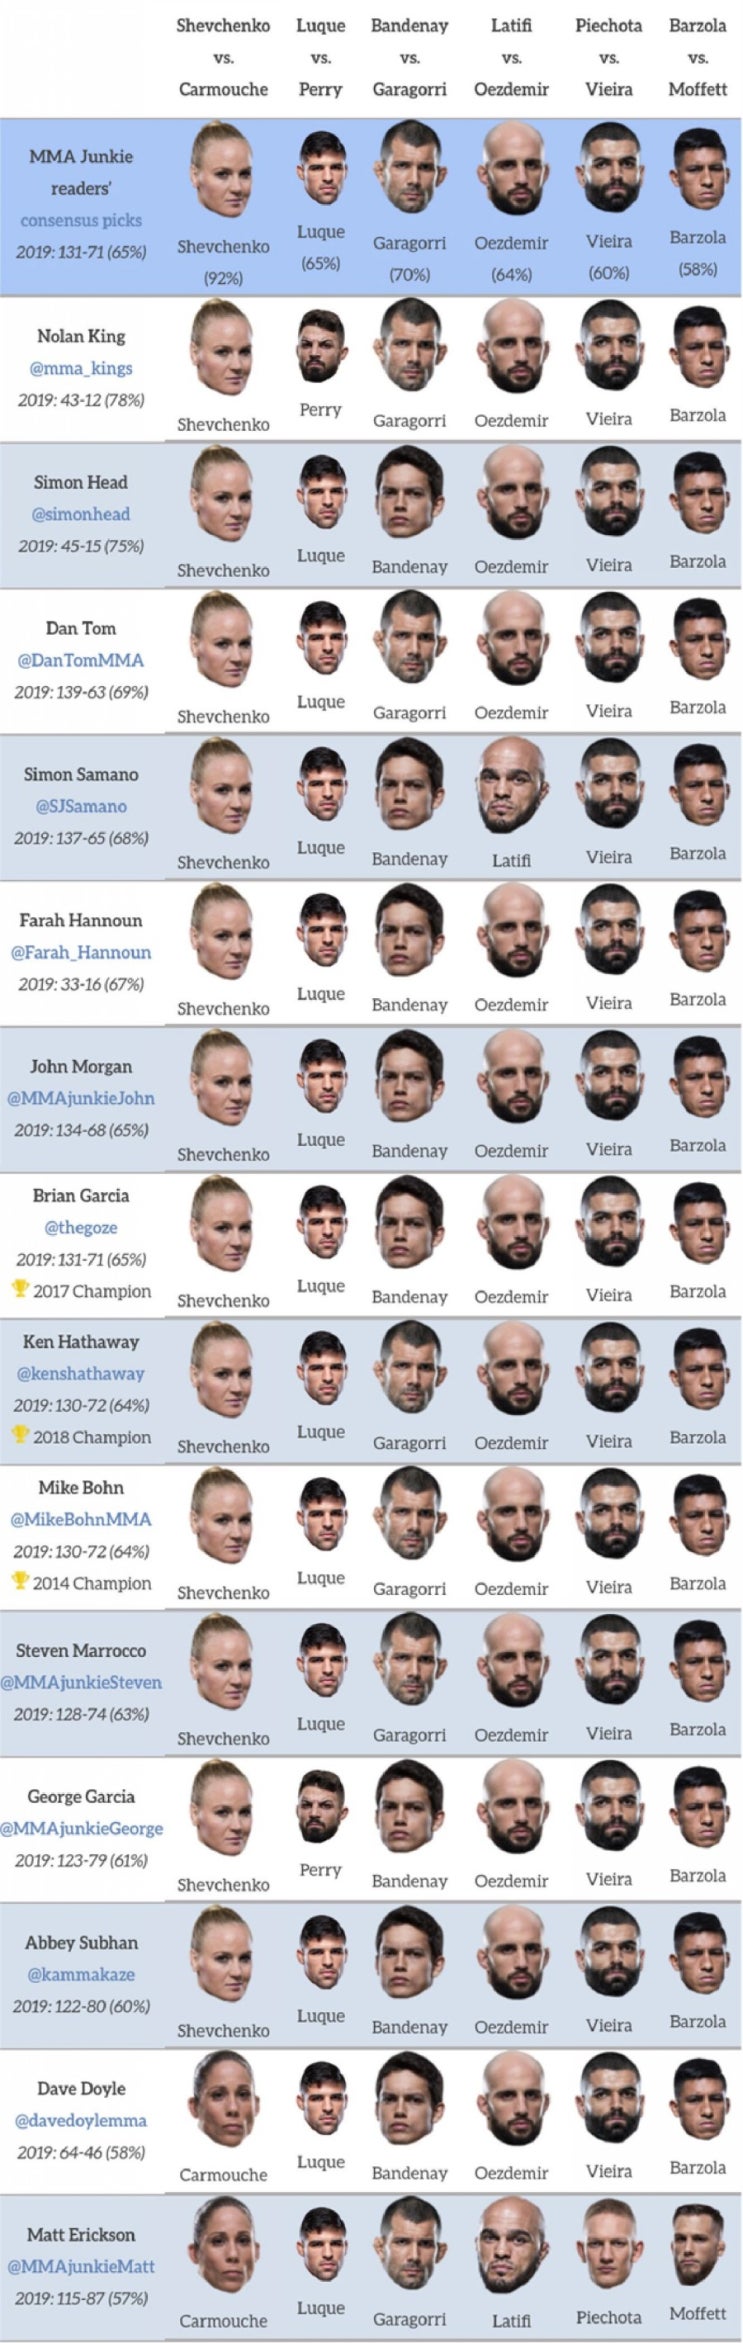 UFC 우루과이 : 셰브첸코 vs 카무치 2 미디어 예상 및 배당률